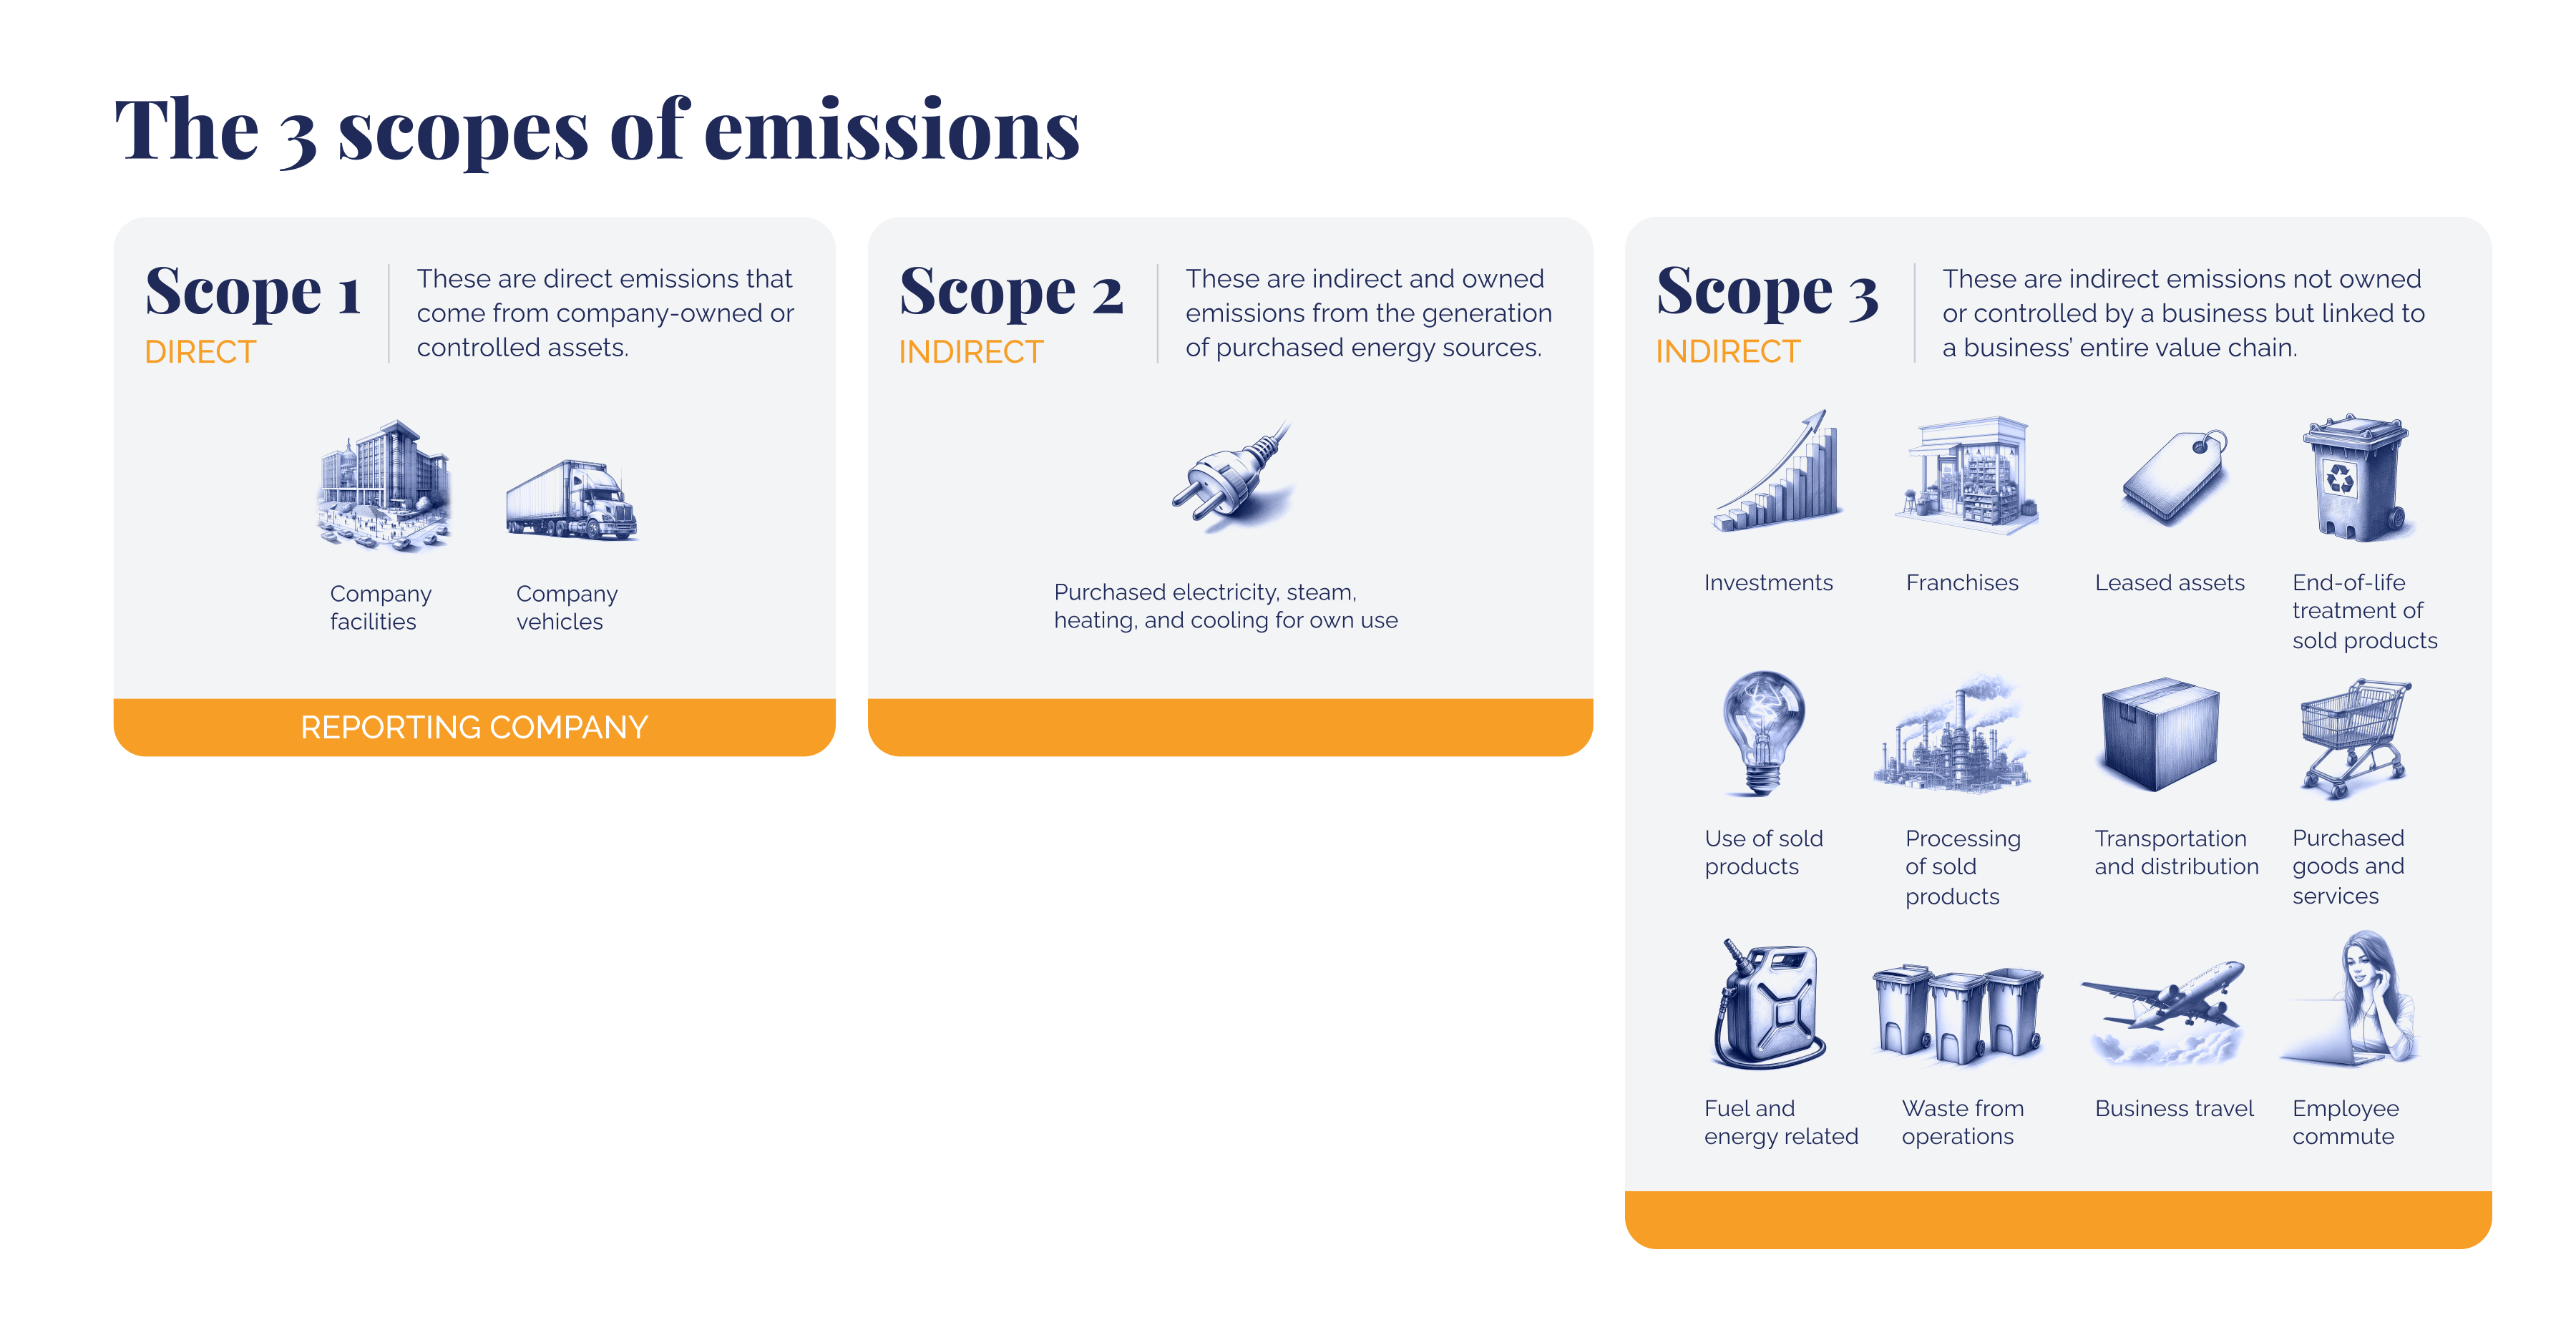 ความยั่งยืนที่ง่ายขึ้น_ การปล่อยก๊าซคาร์บอนไดออกไซด์สำหรับผู้เริ่มต้น_ภาพประกอบขอบเขตการปล่อยก๊าซเรือนกระจก 3 ขอบเขต_ภาพ 3 (1)